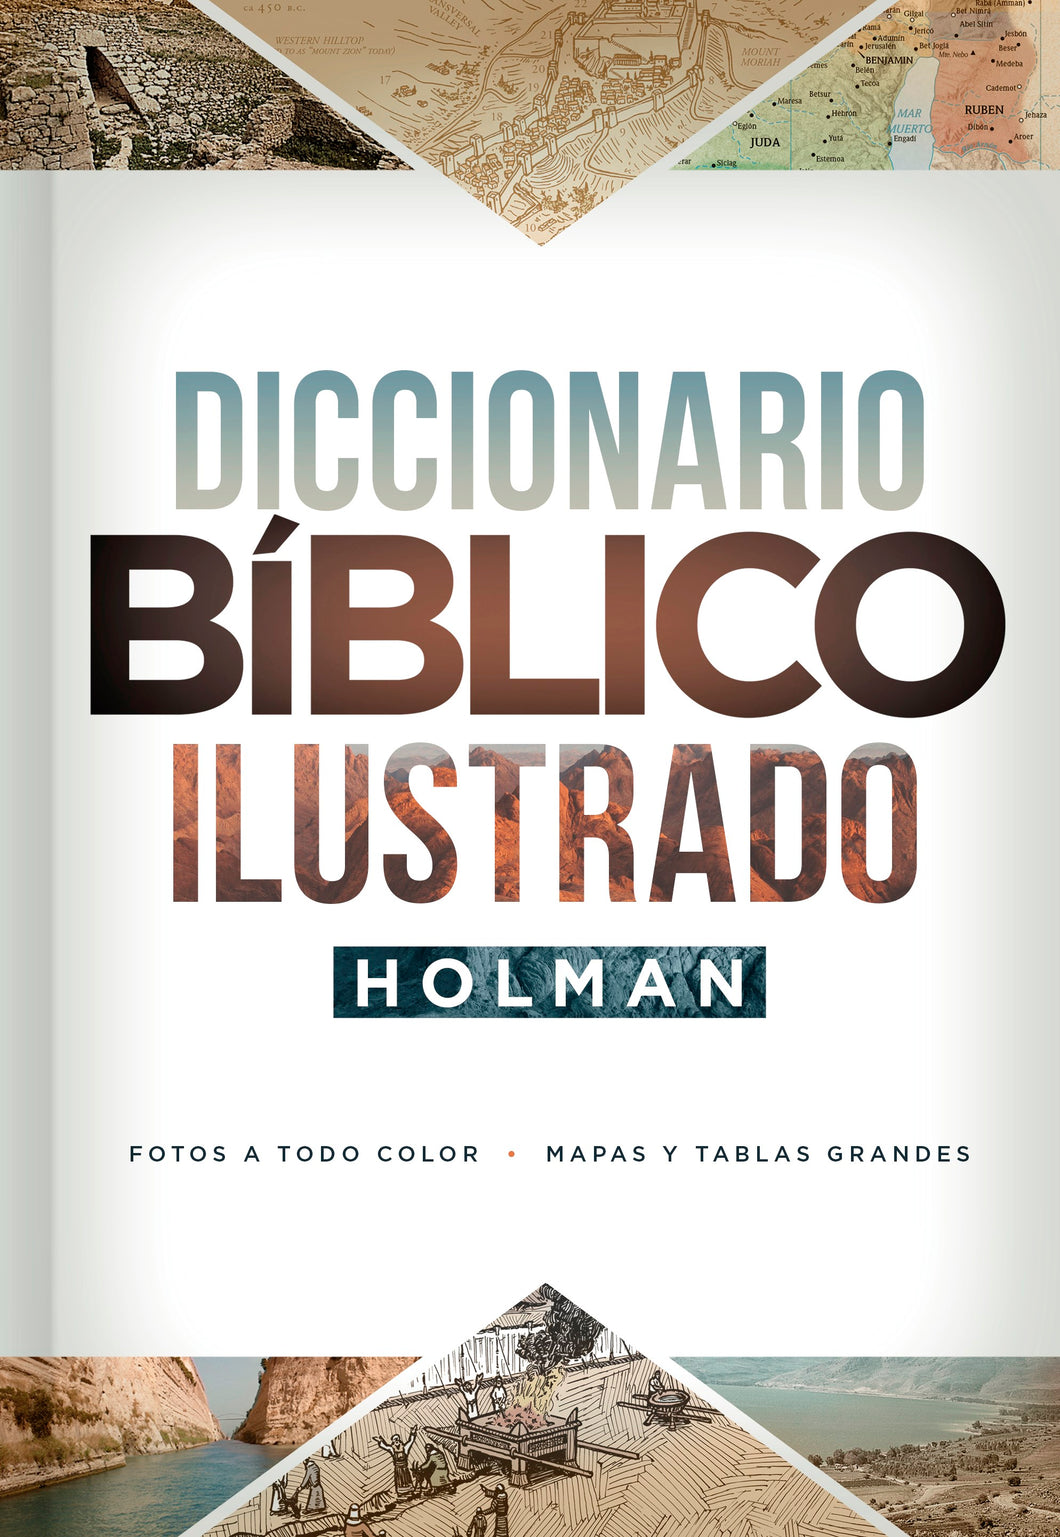 Spanish-Holman Illustrated Bible Dictionary (3rd Edition) (Diccionario Biblico Ilustrado Holman  3era Edicion)